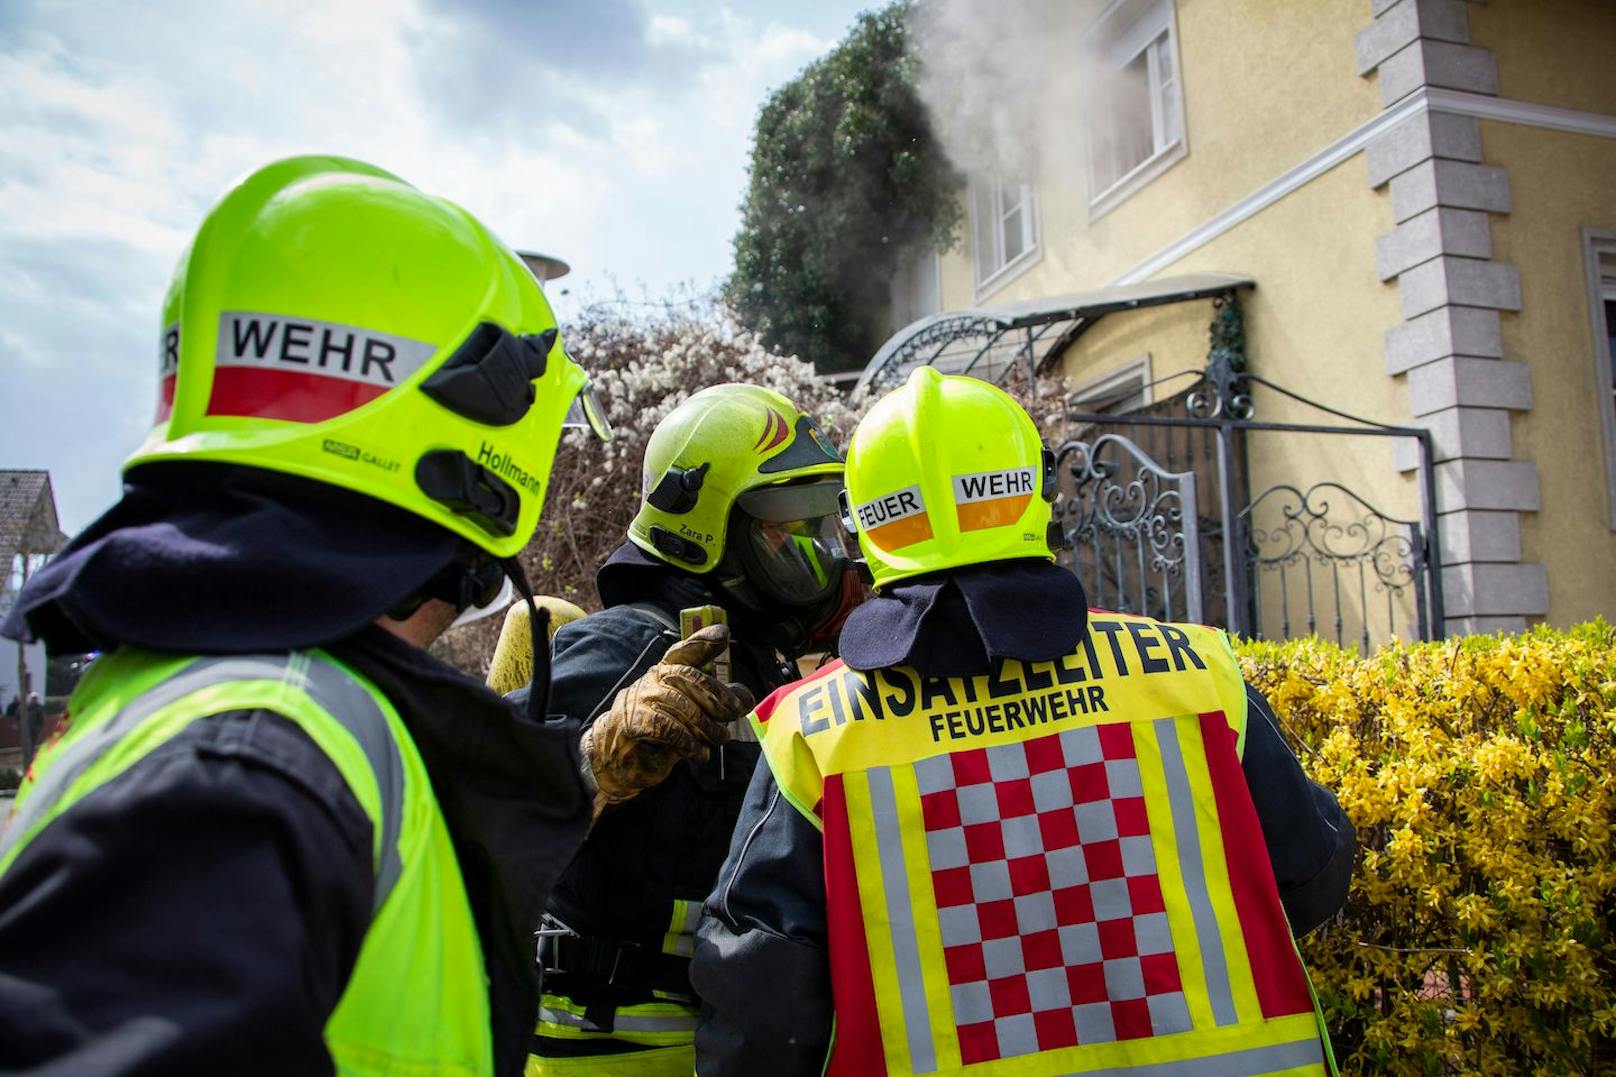 Wohnhausbrand in Guntramsdorf: Einsatzkräfte vor Ort